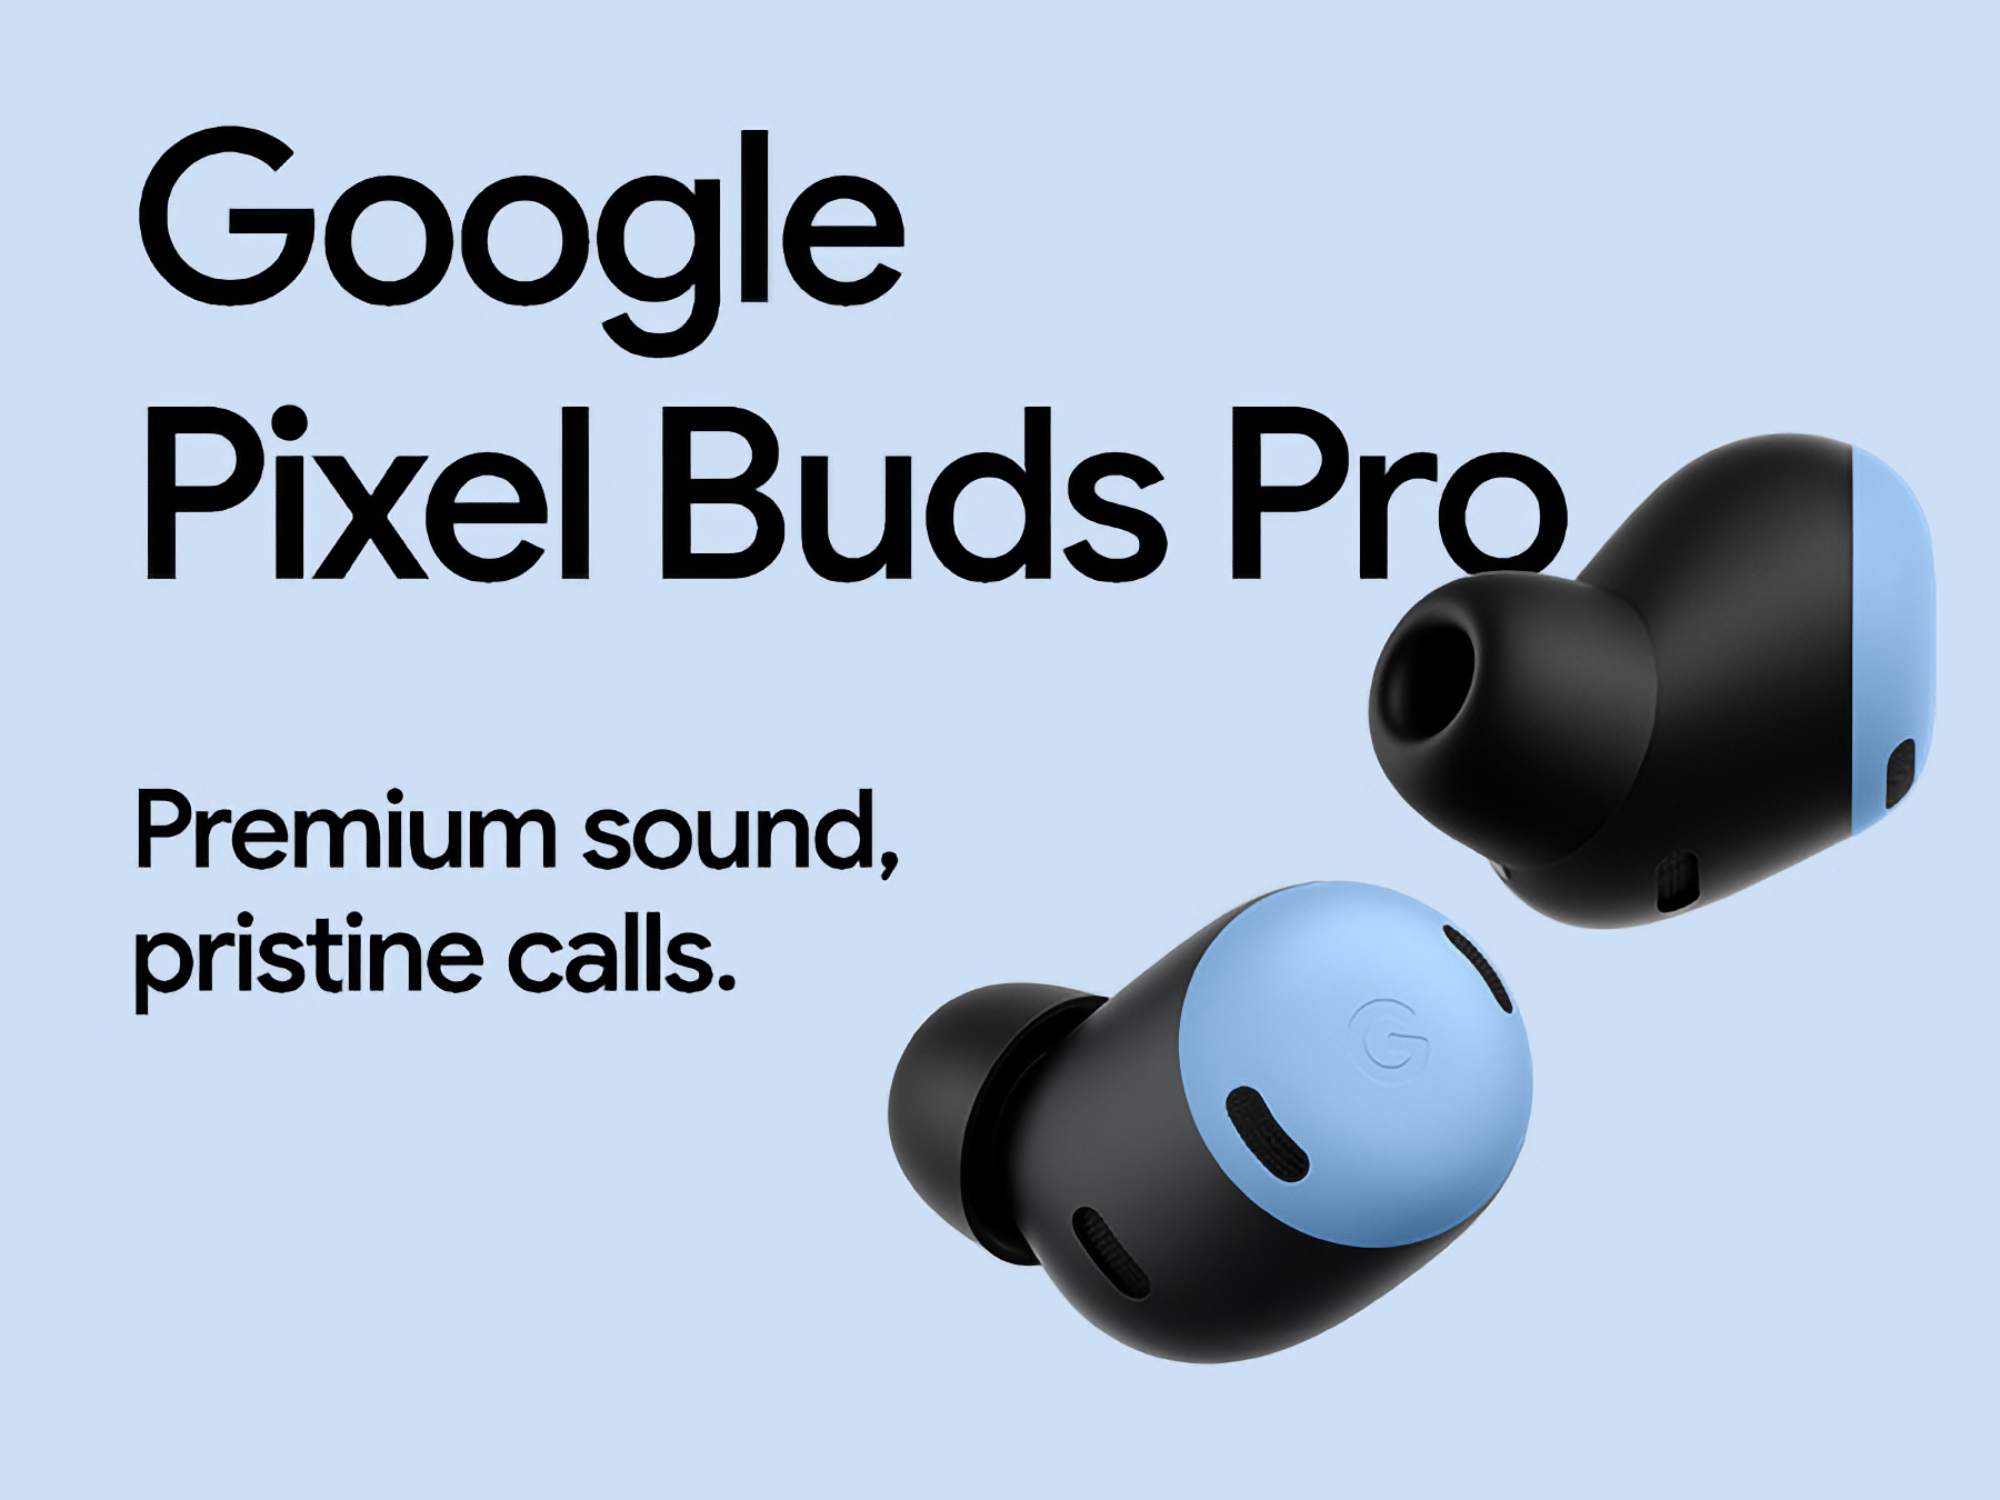 Une offre exceptionnelle : Google Pixel Buds Pro sur Amazon avec une réduction de 50